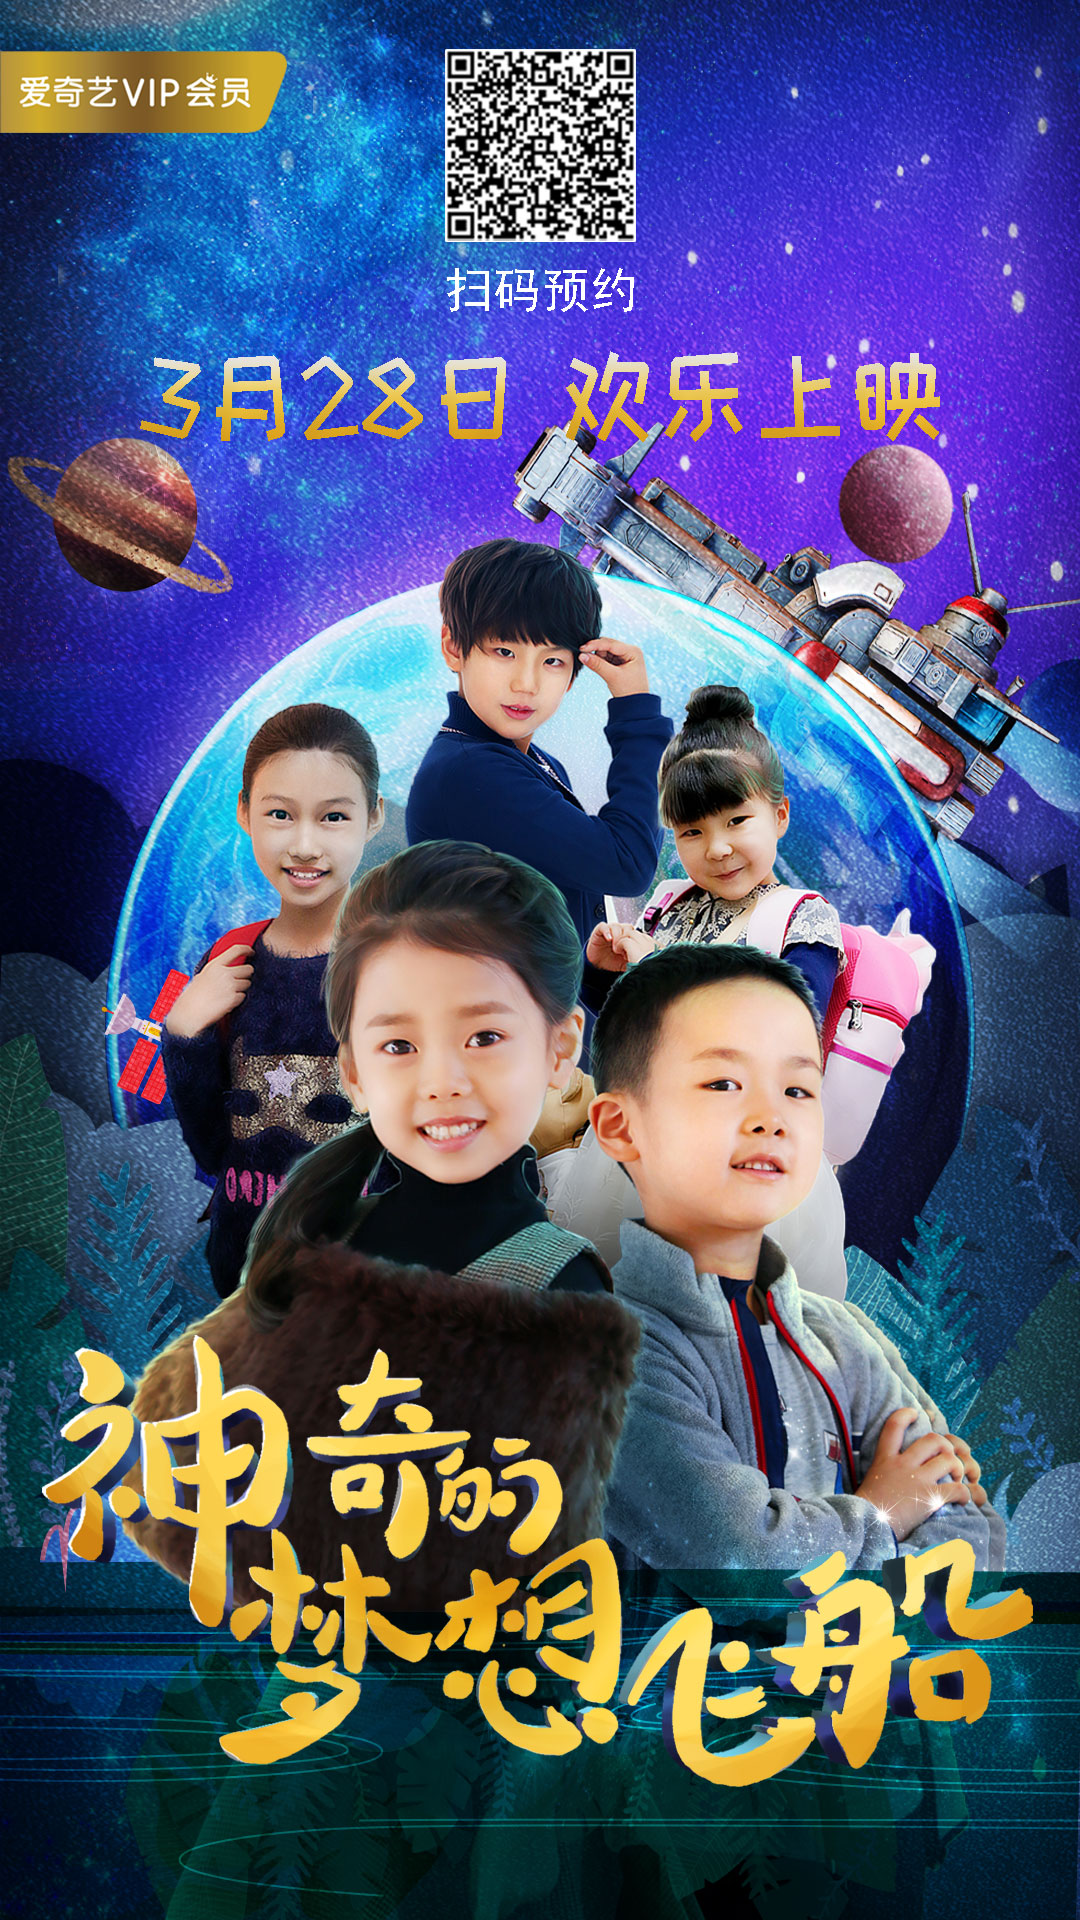 讲述成长和教育 电影《神奇的梦想飞船》定档3月28日